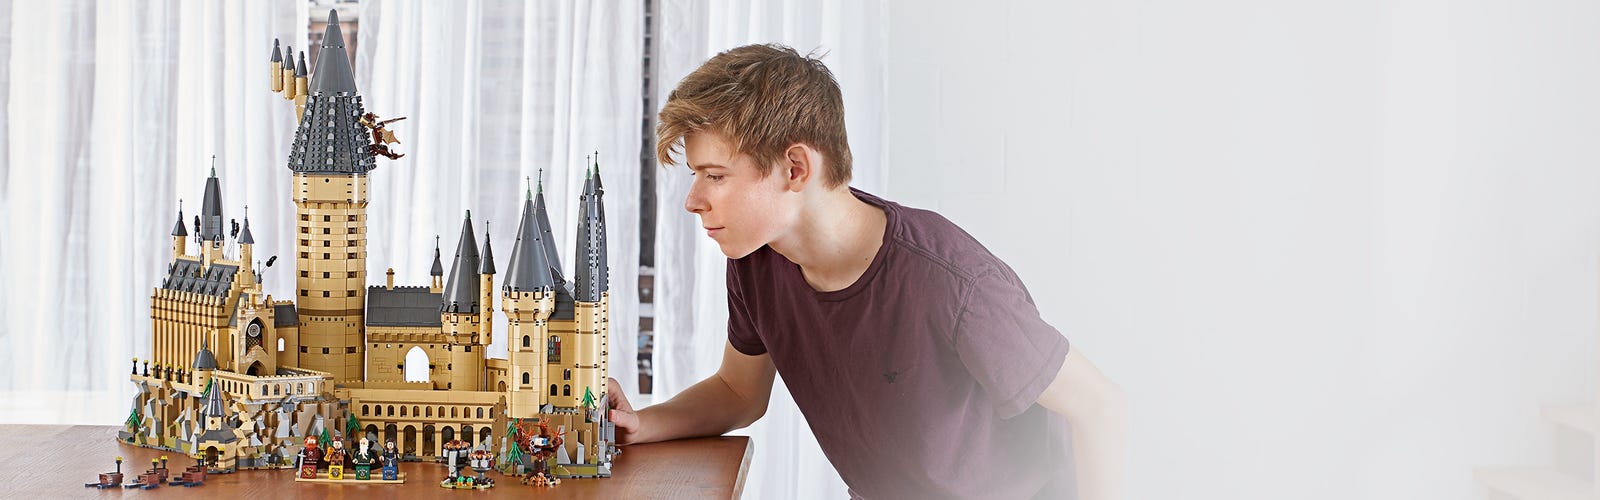 Extreem belangrijk Slijm Reageren Kasteel Zweinstein™ 71043 | Harry Potter™ | Officiële LEGO® winkel NL